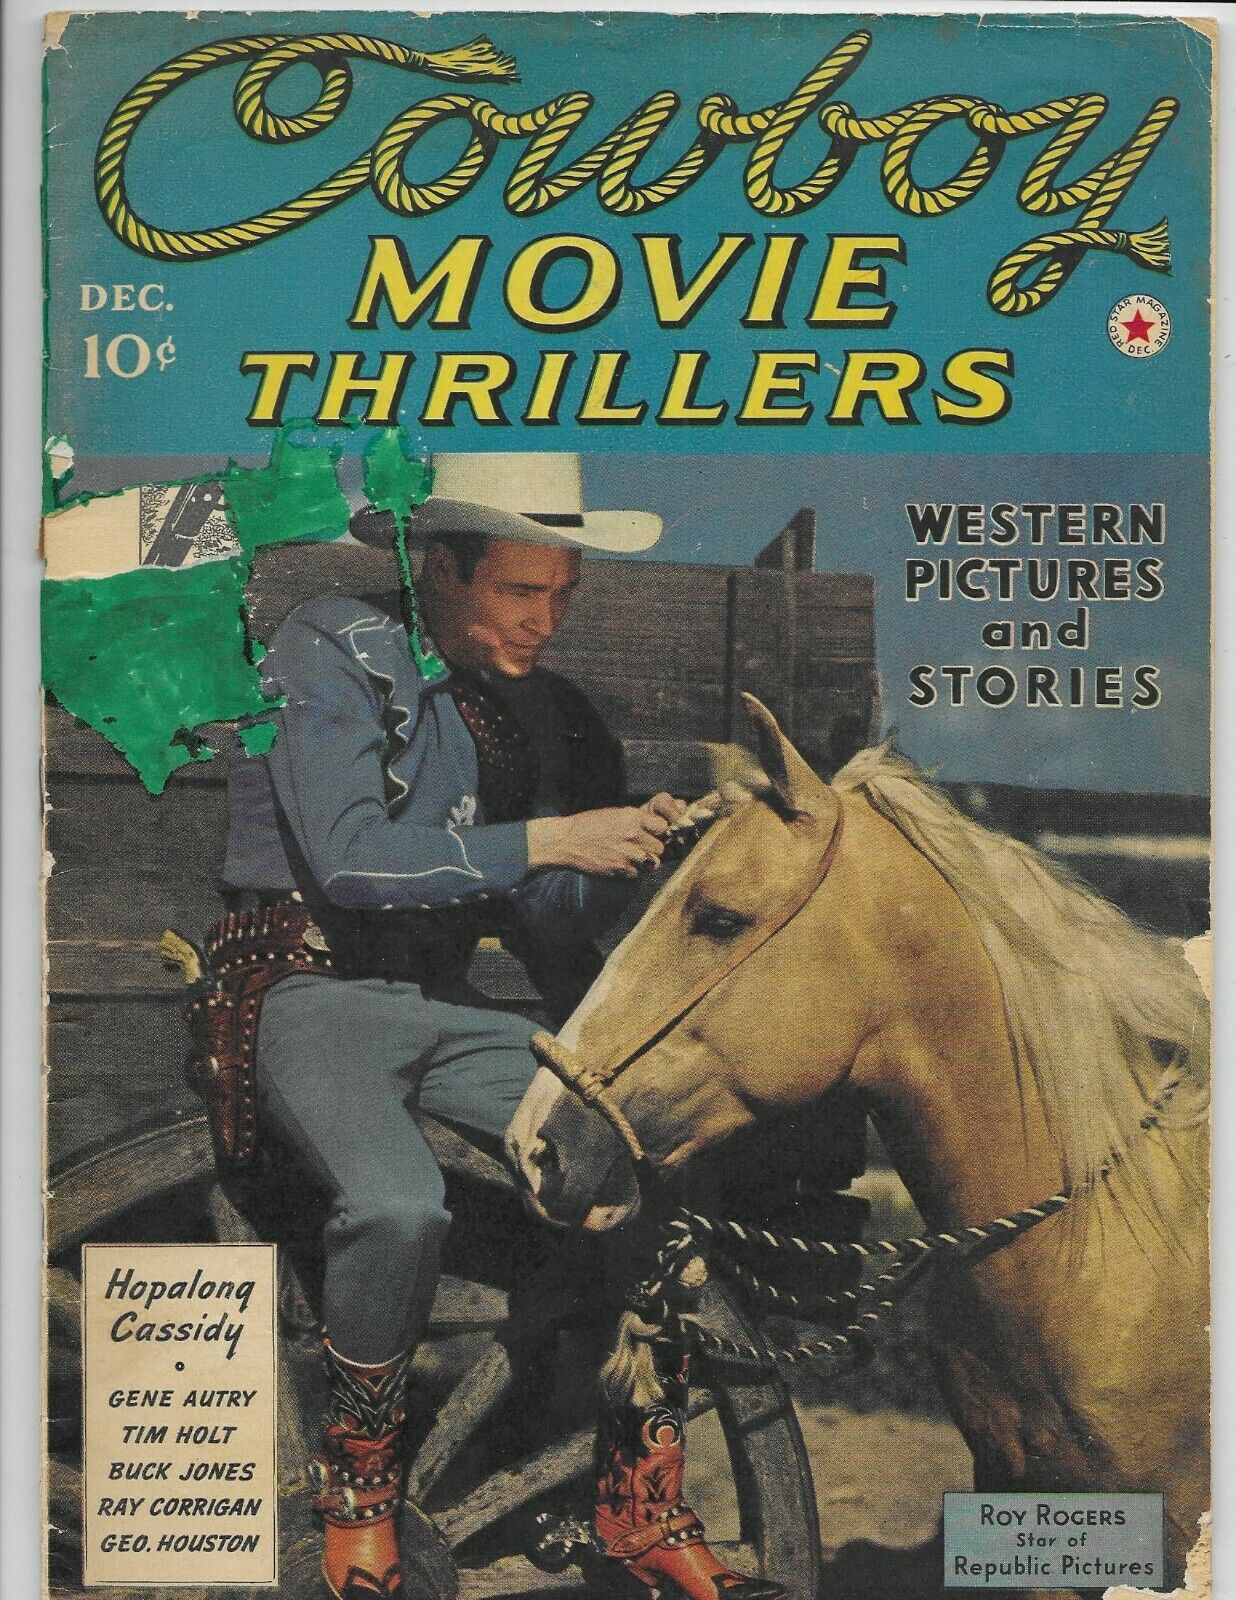 Cowboy Movie Thrillers - December 1941